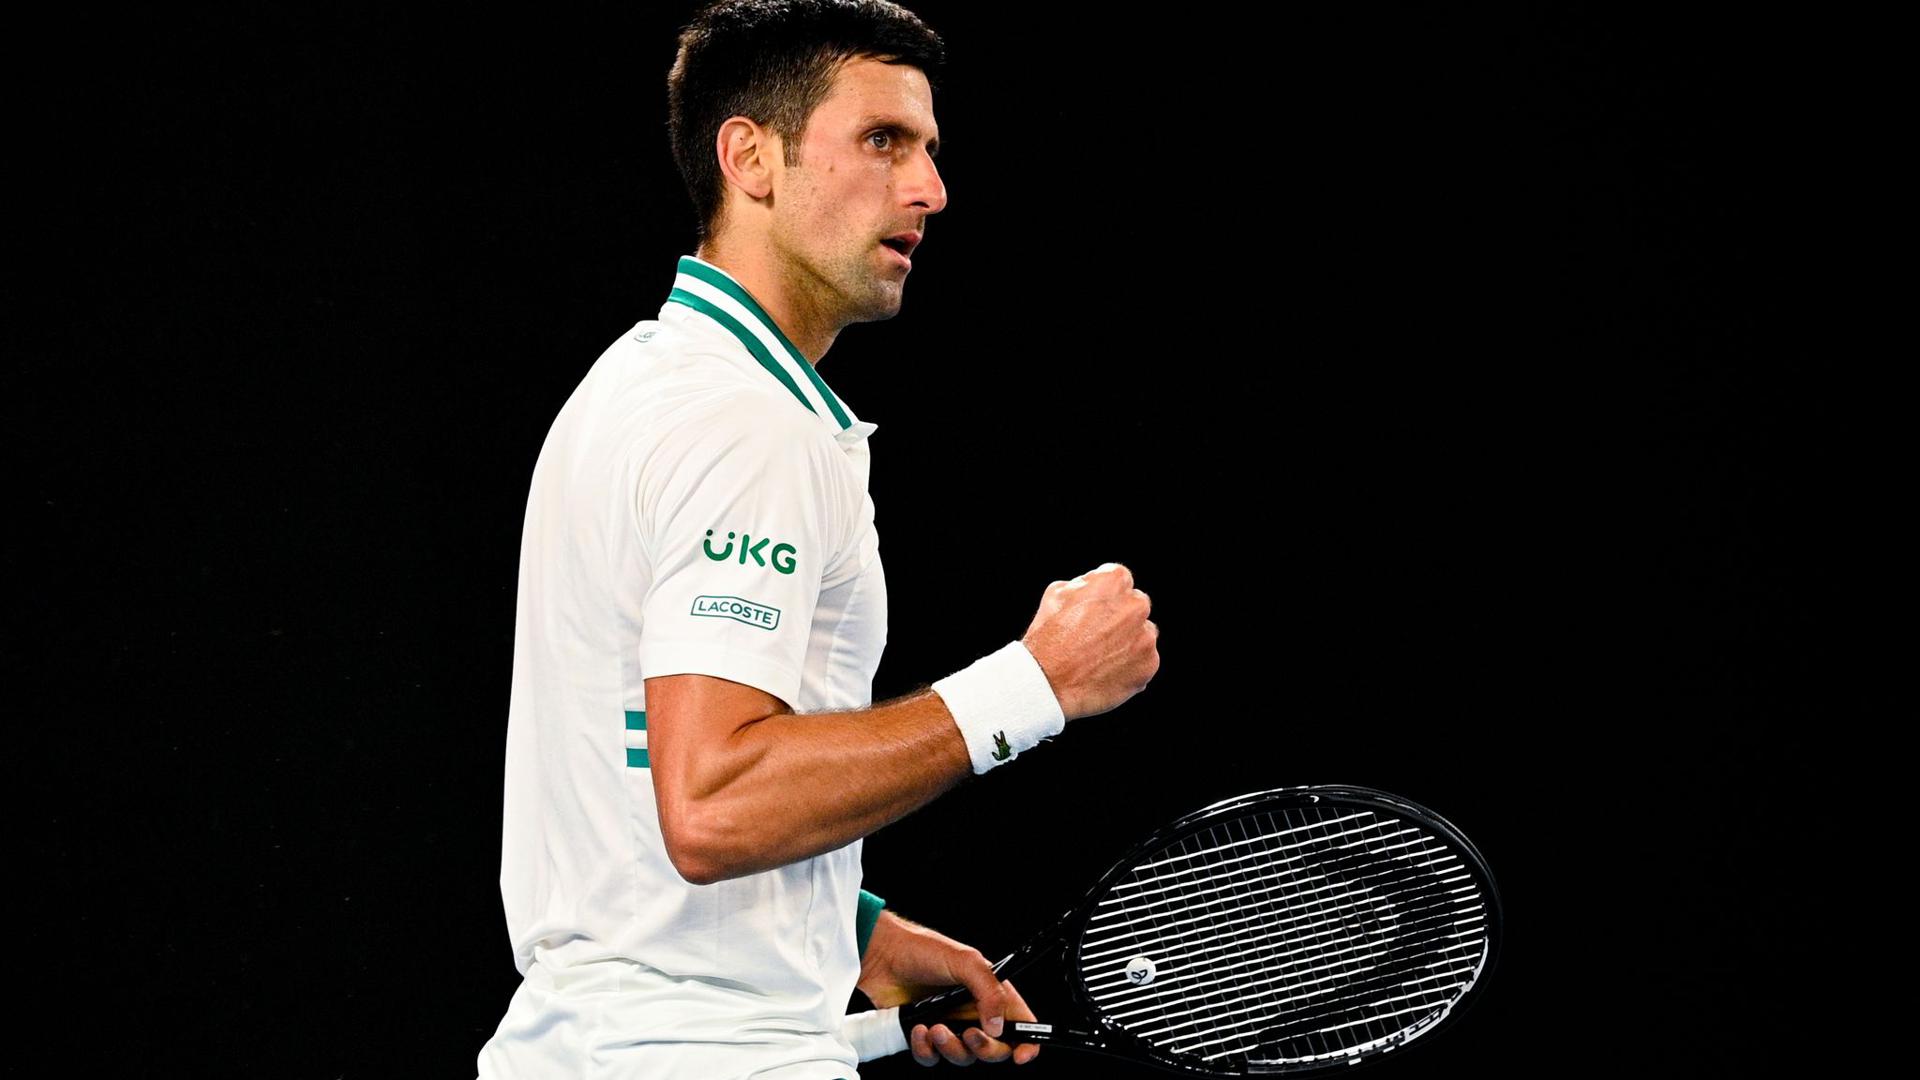 Hat sich auch im Finale der Australian Open klar durchgesetzt: Der Serbe Novak Djokovic ballt die Faust.